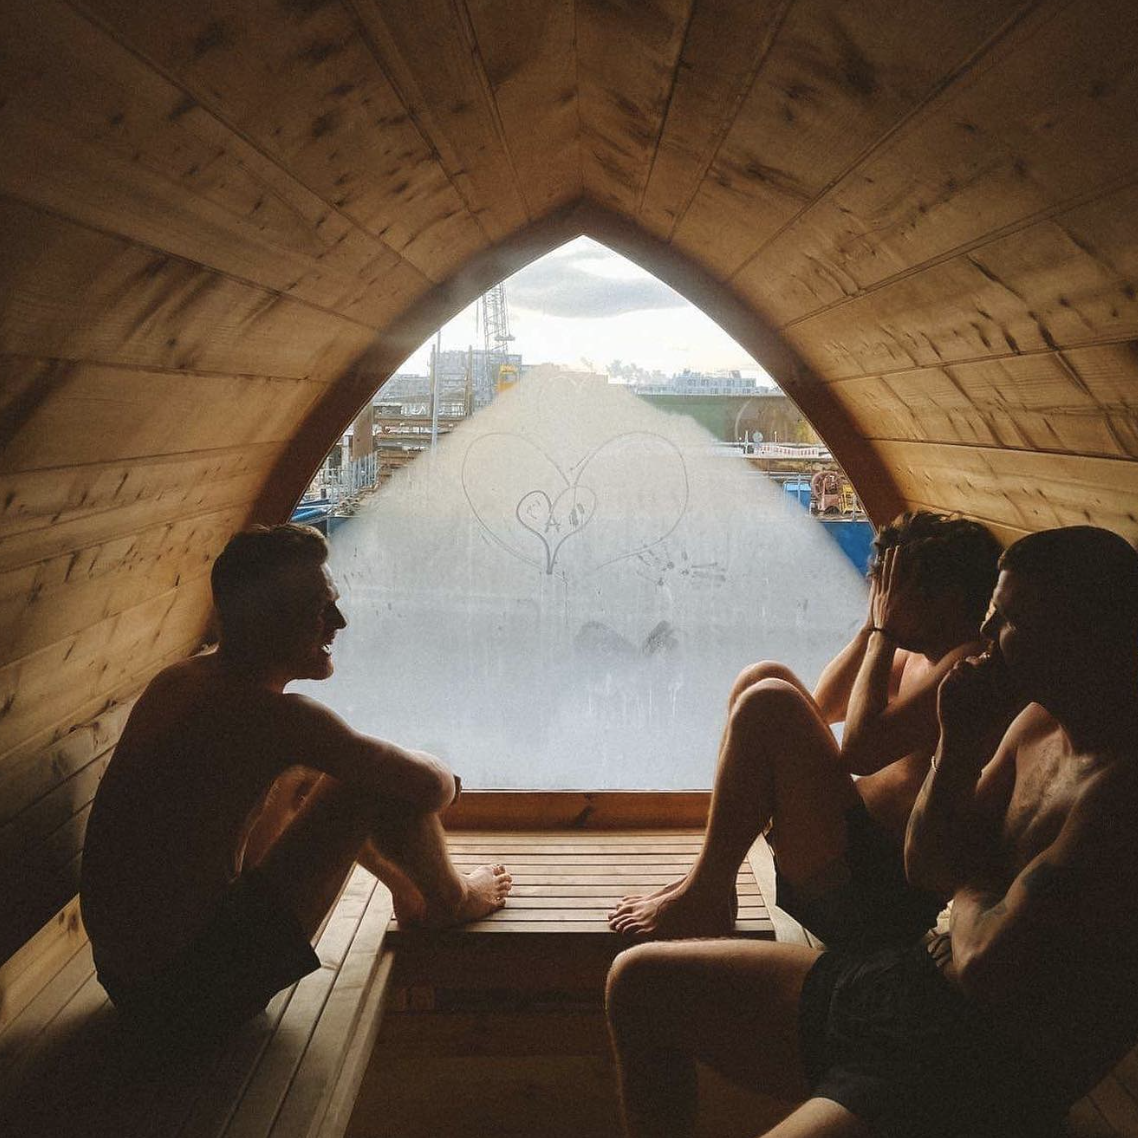 Lej din egen sauna på Broens Skøjtebane